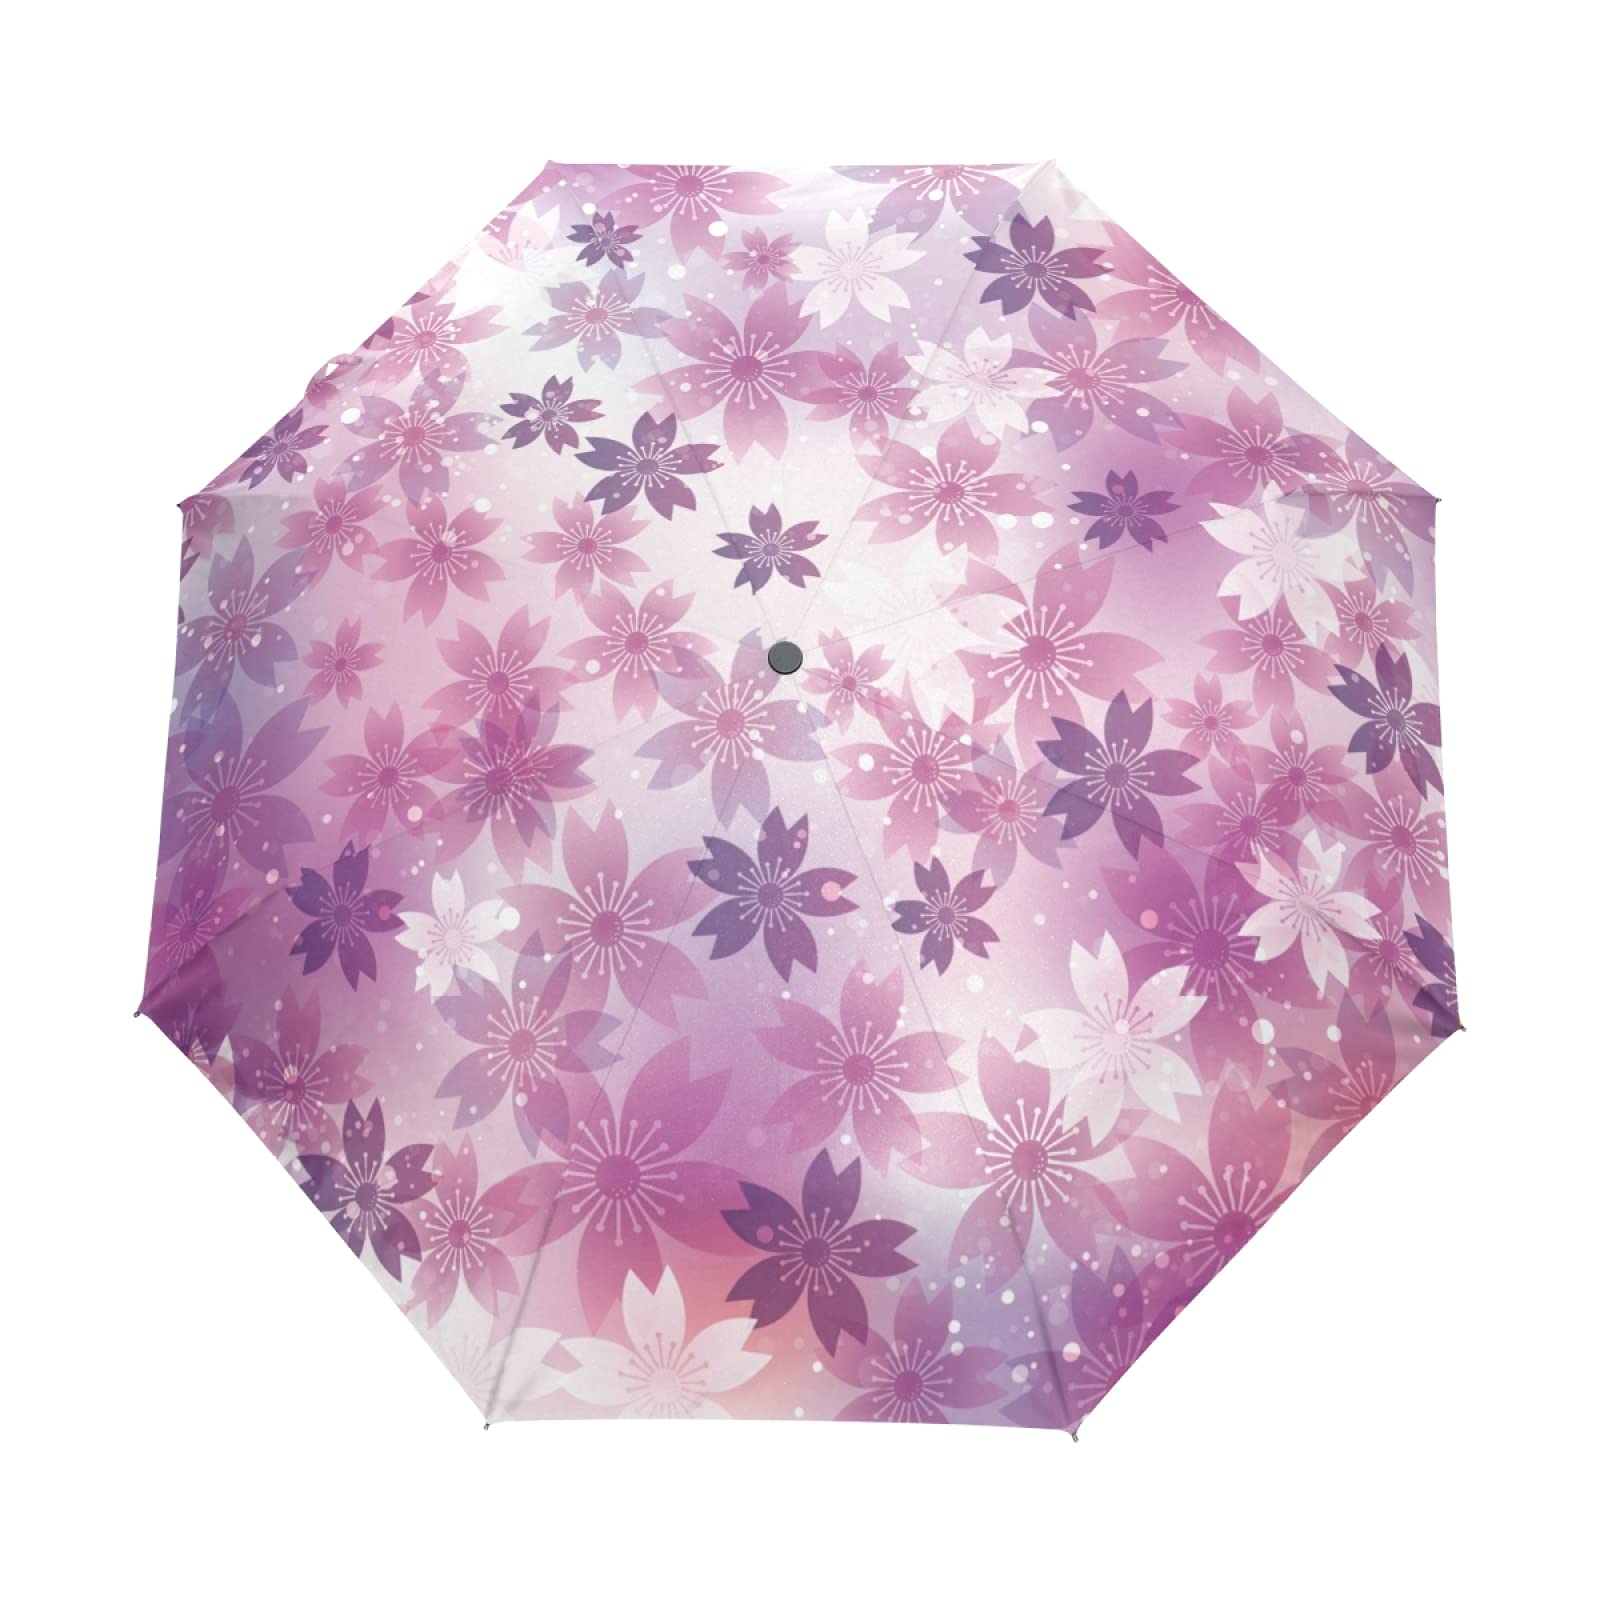 Chovy 日傘 UVカット ワンタッチ 折りたたみ傘 軽量 自動開閉 遮光 レディース メンズ 晴雨兼用 桜 桜柄 和風 和柄 紫 パープル 雨傘